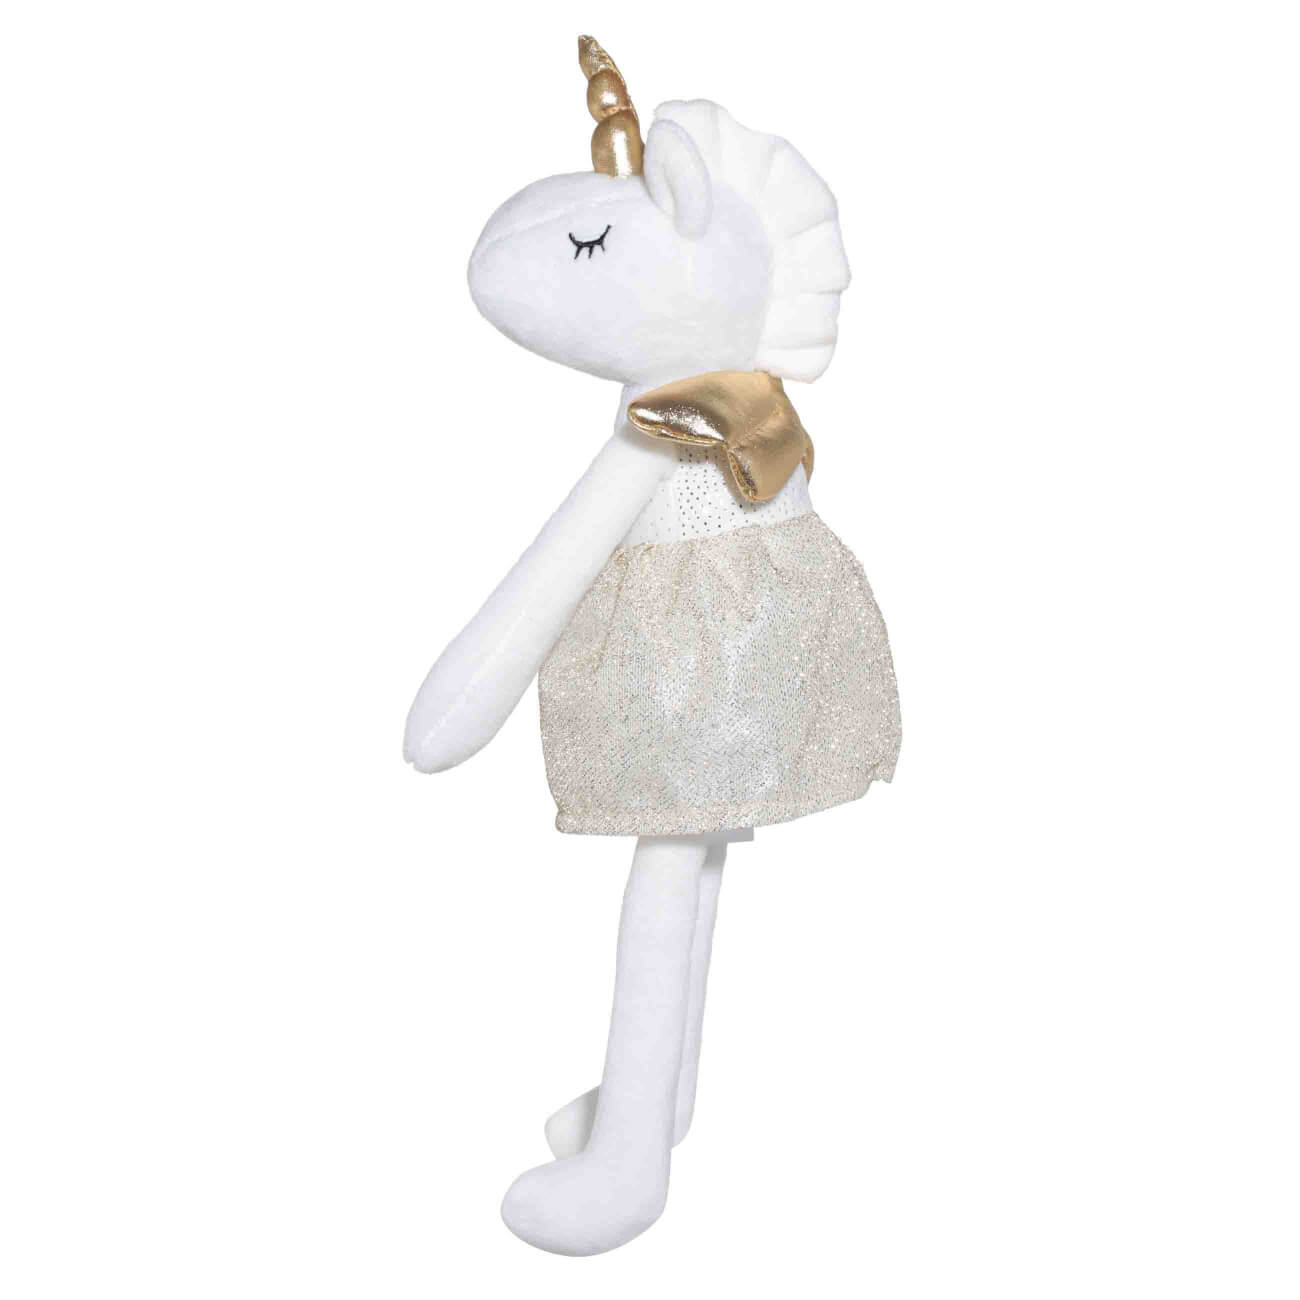 Игрушка, 37 см, мягкая, полиэстер, белая, Единорог в золотистой юбке, Unicorn игрушка 37 см мягкая полиэстер белая единорог в золотистой юбке unicorn